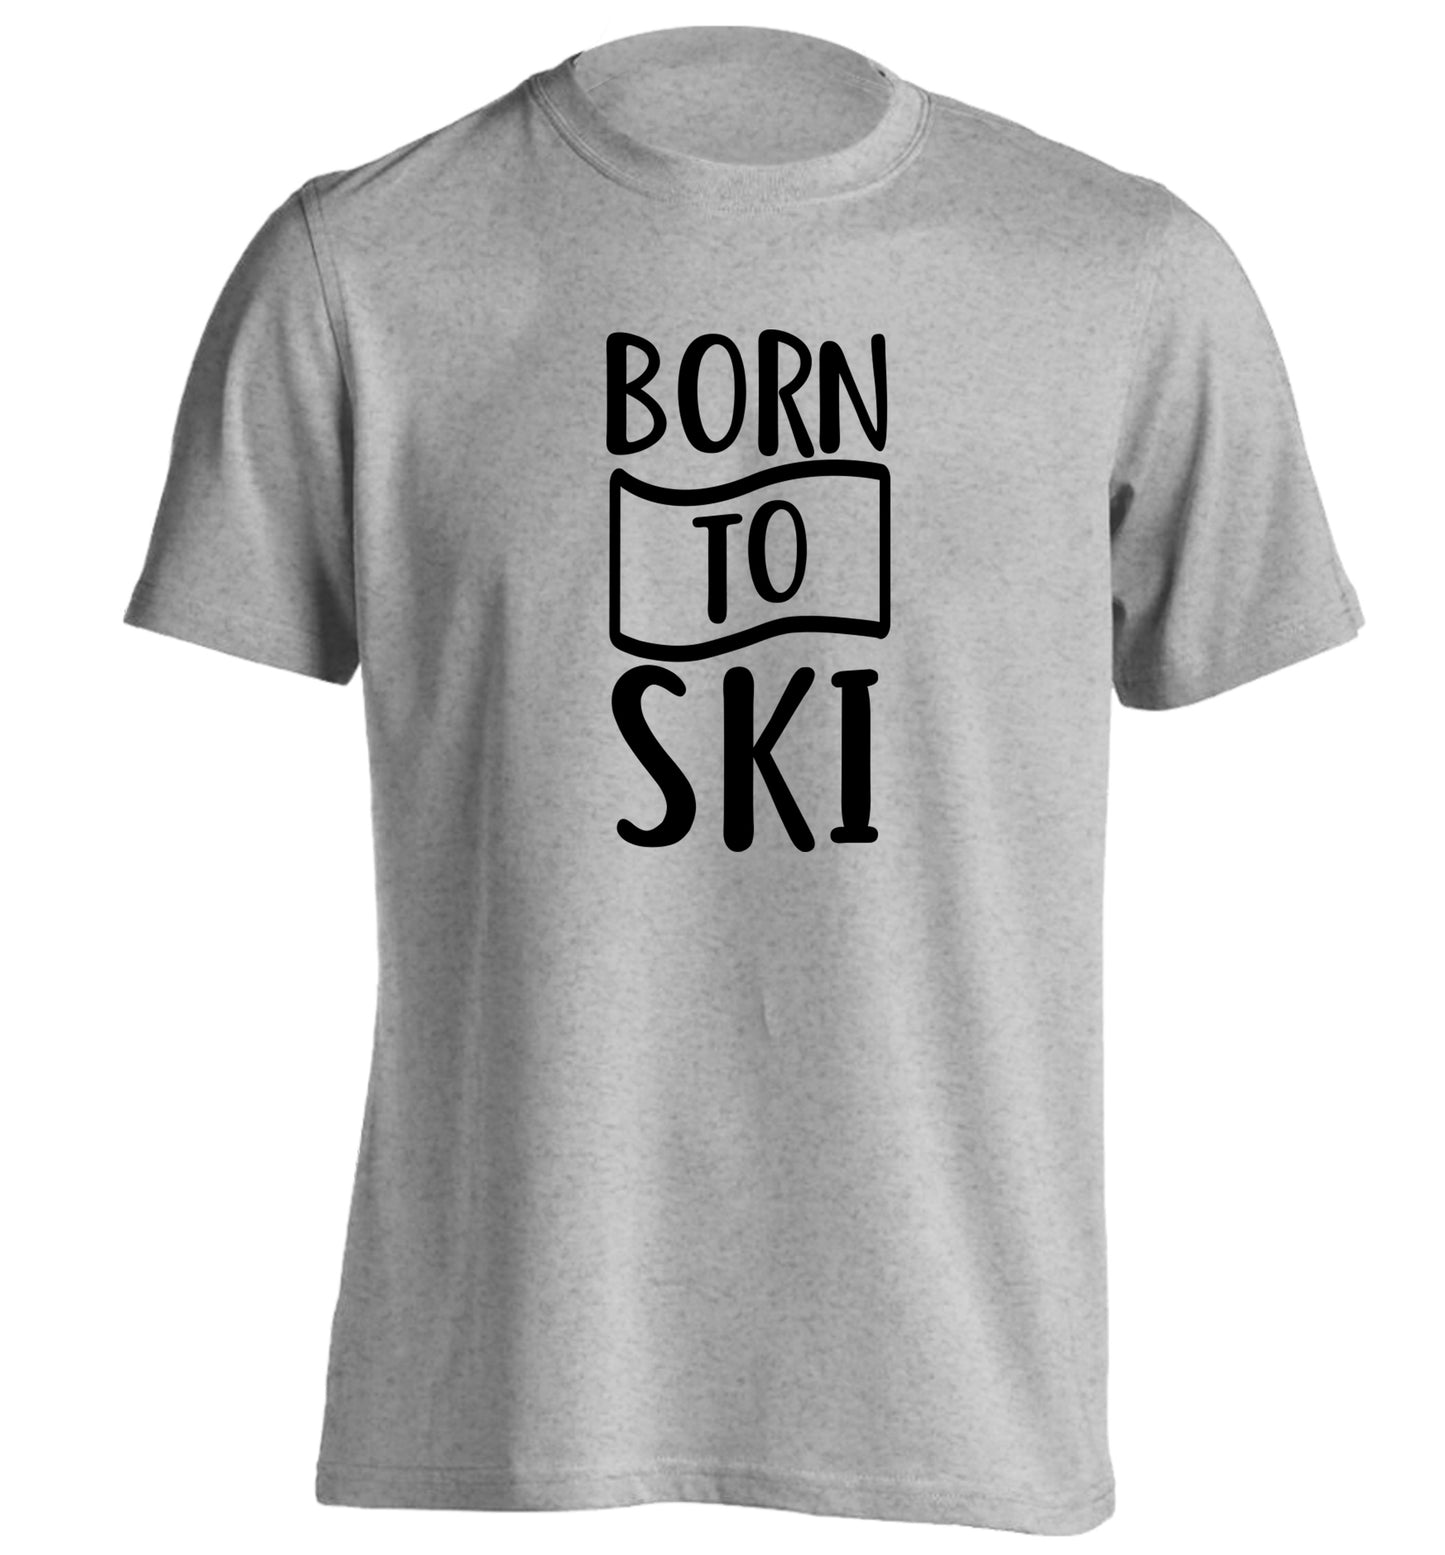 Born to ski adults unisexgrey Tshirt 2XL